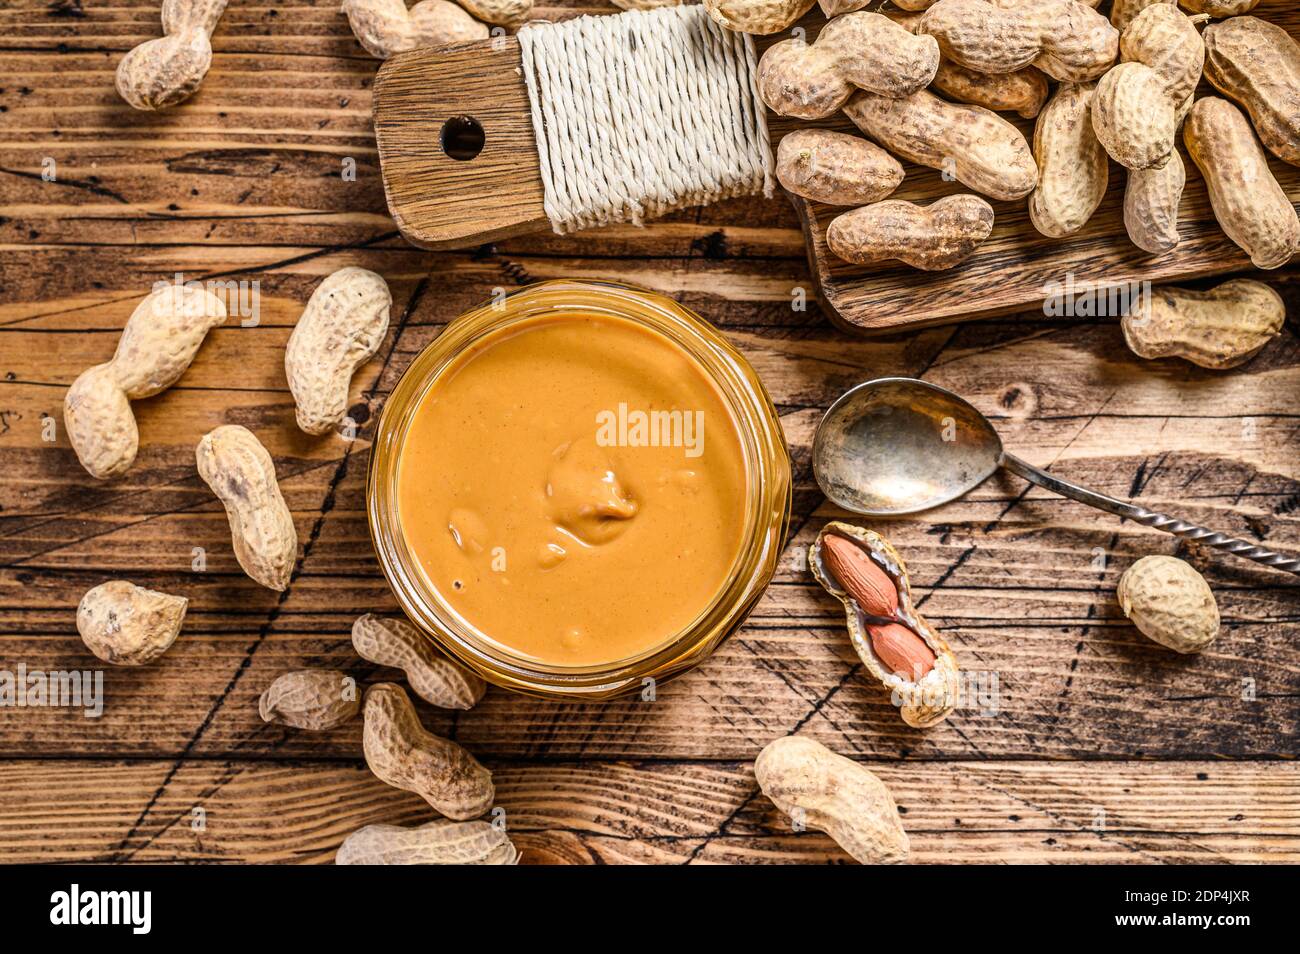 https://c8.alamy.com/comp/2DP4JXR/fresh-made-creamy-peanut-butter-in-a-glass-jar-wooden-background-top-view-2DP4JXR.jpg